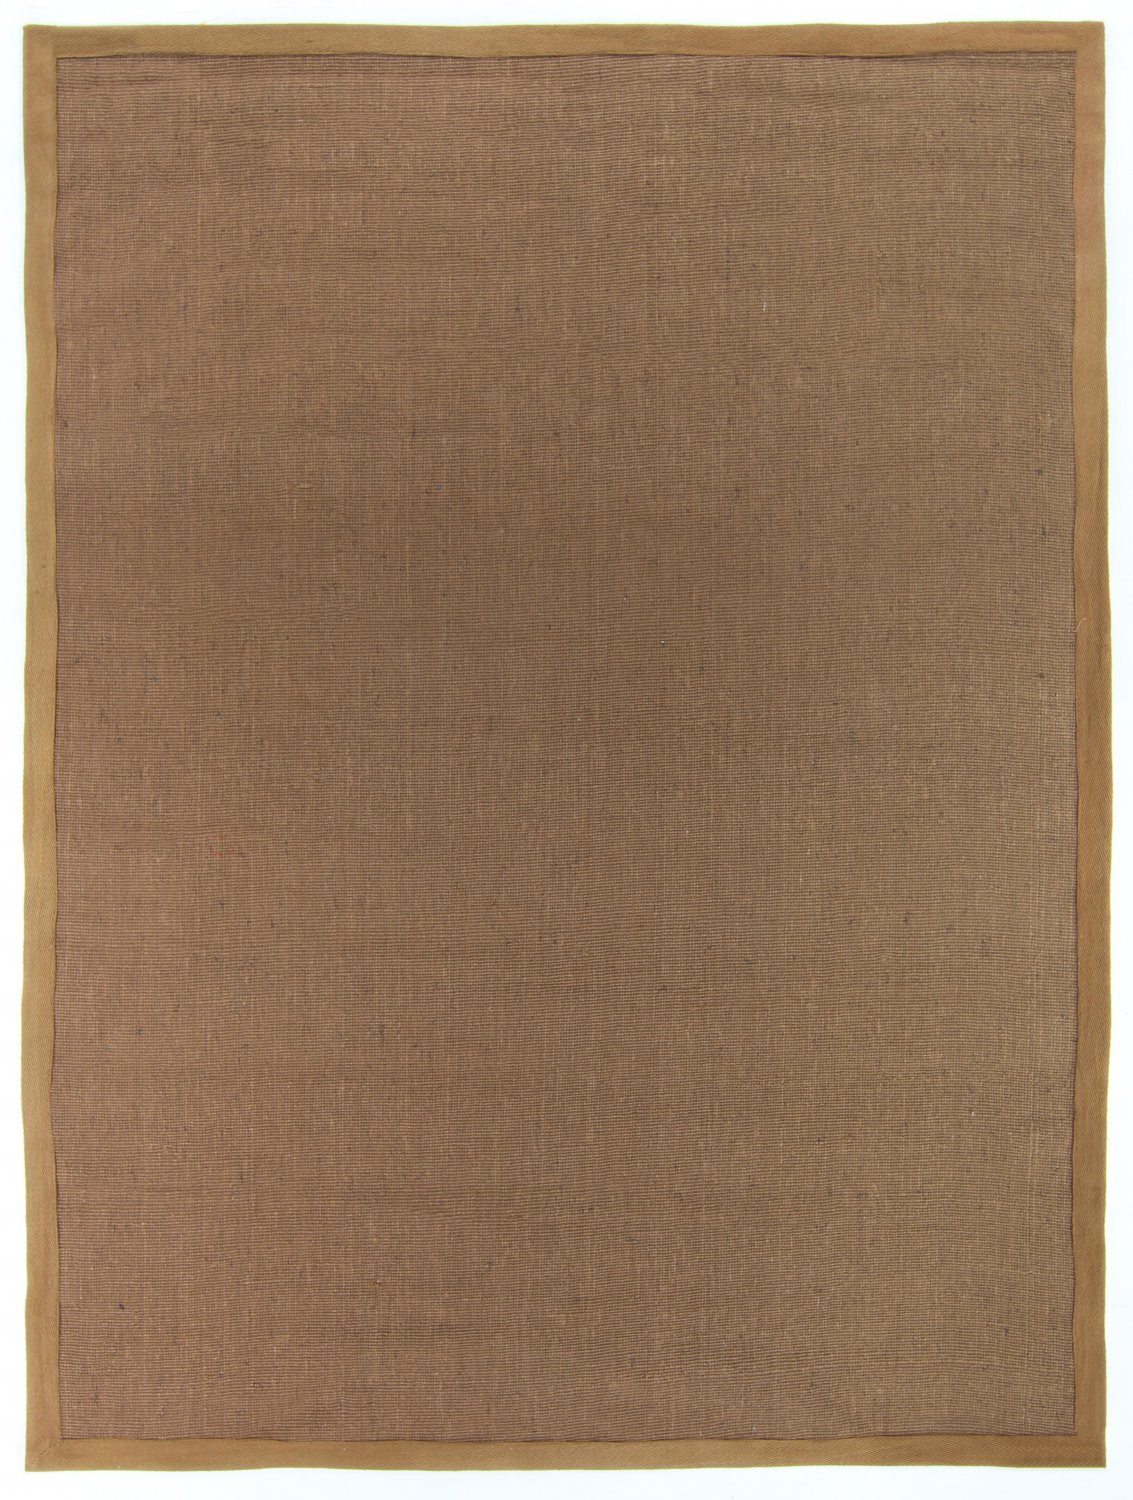 Sisal rugs - Agave (brown)